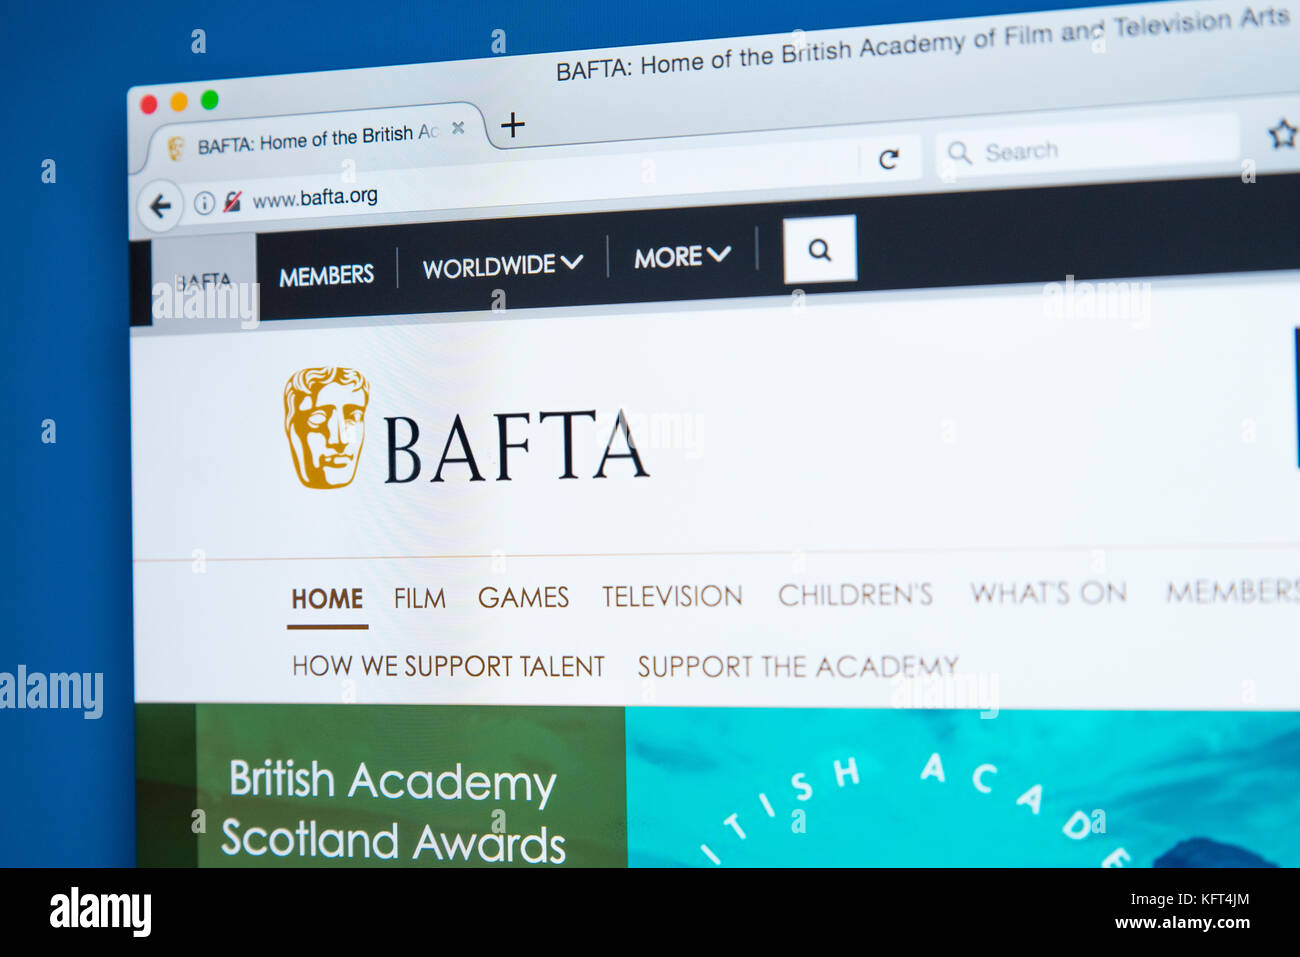 London, UK, 17. Oktober 2017: Die Homepage der offiziellen Website für den BAFTA-der Britischen Akademie für Film und Fernsehen, Kultur, am 17. Oktober 2017 Stockfoto